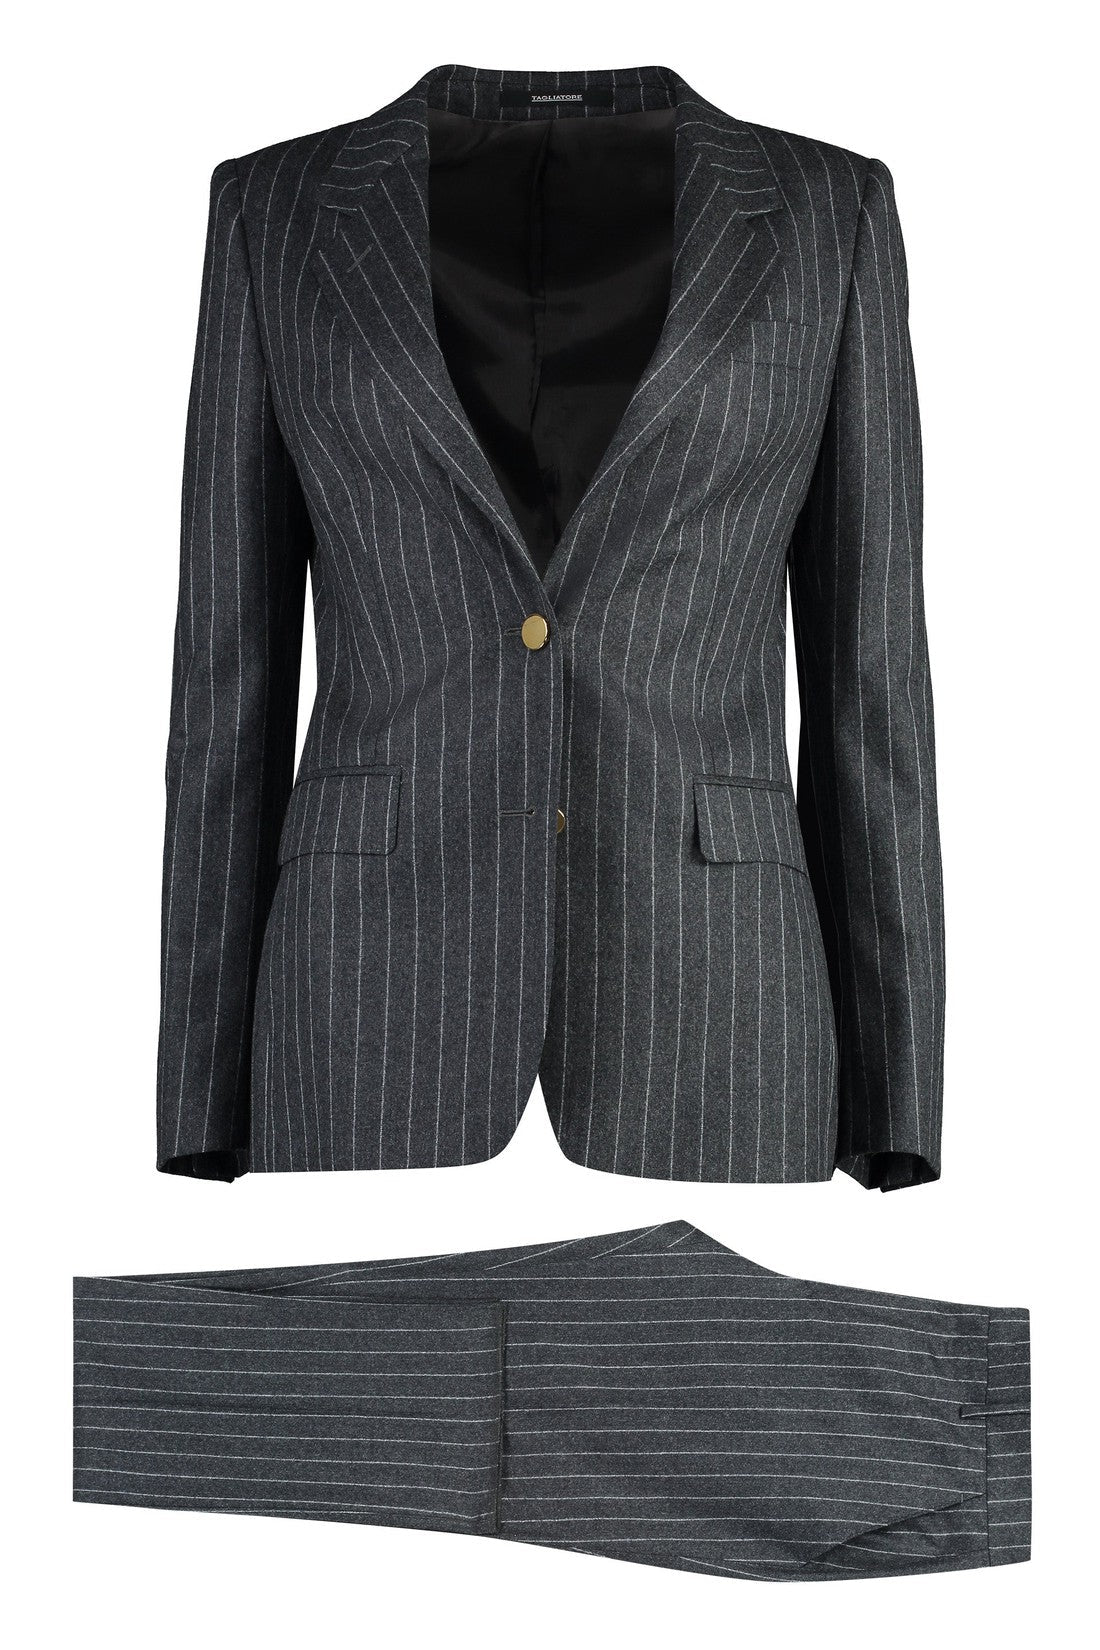 0205 Tagliatore-OUTLET-SALE-T-Parigi stretch virgin wool two piece suit-ARCHIVIST